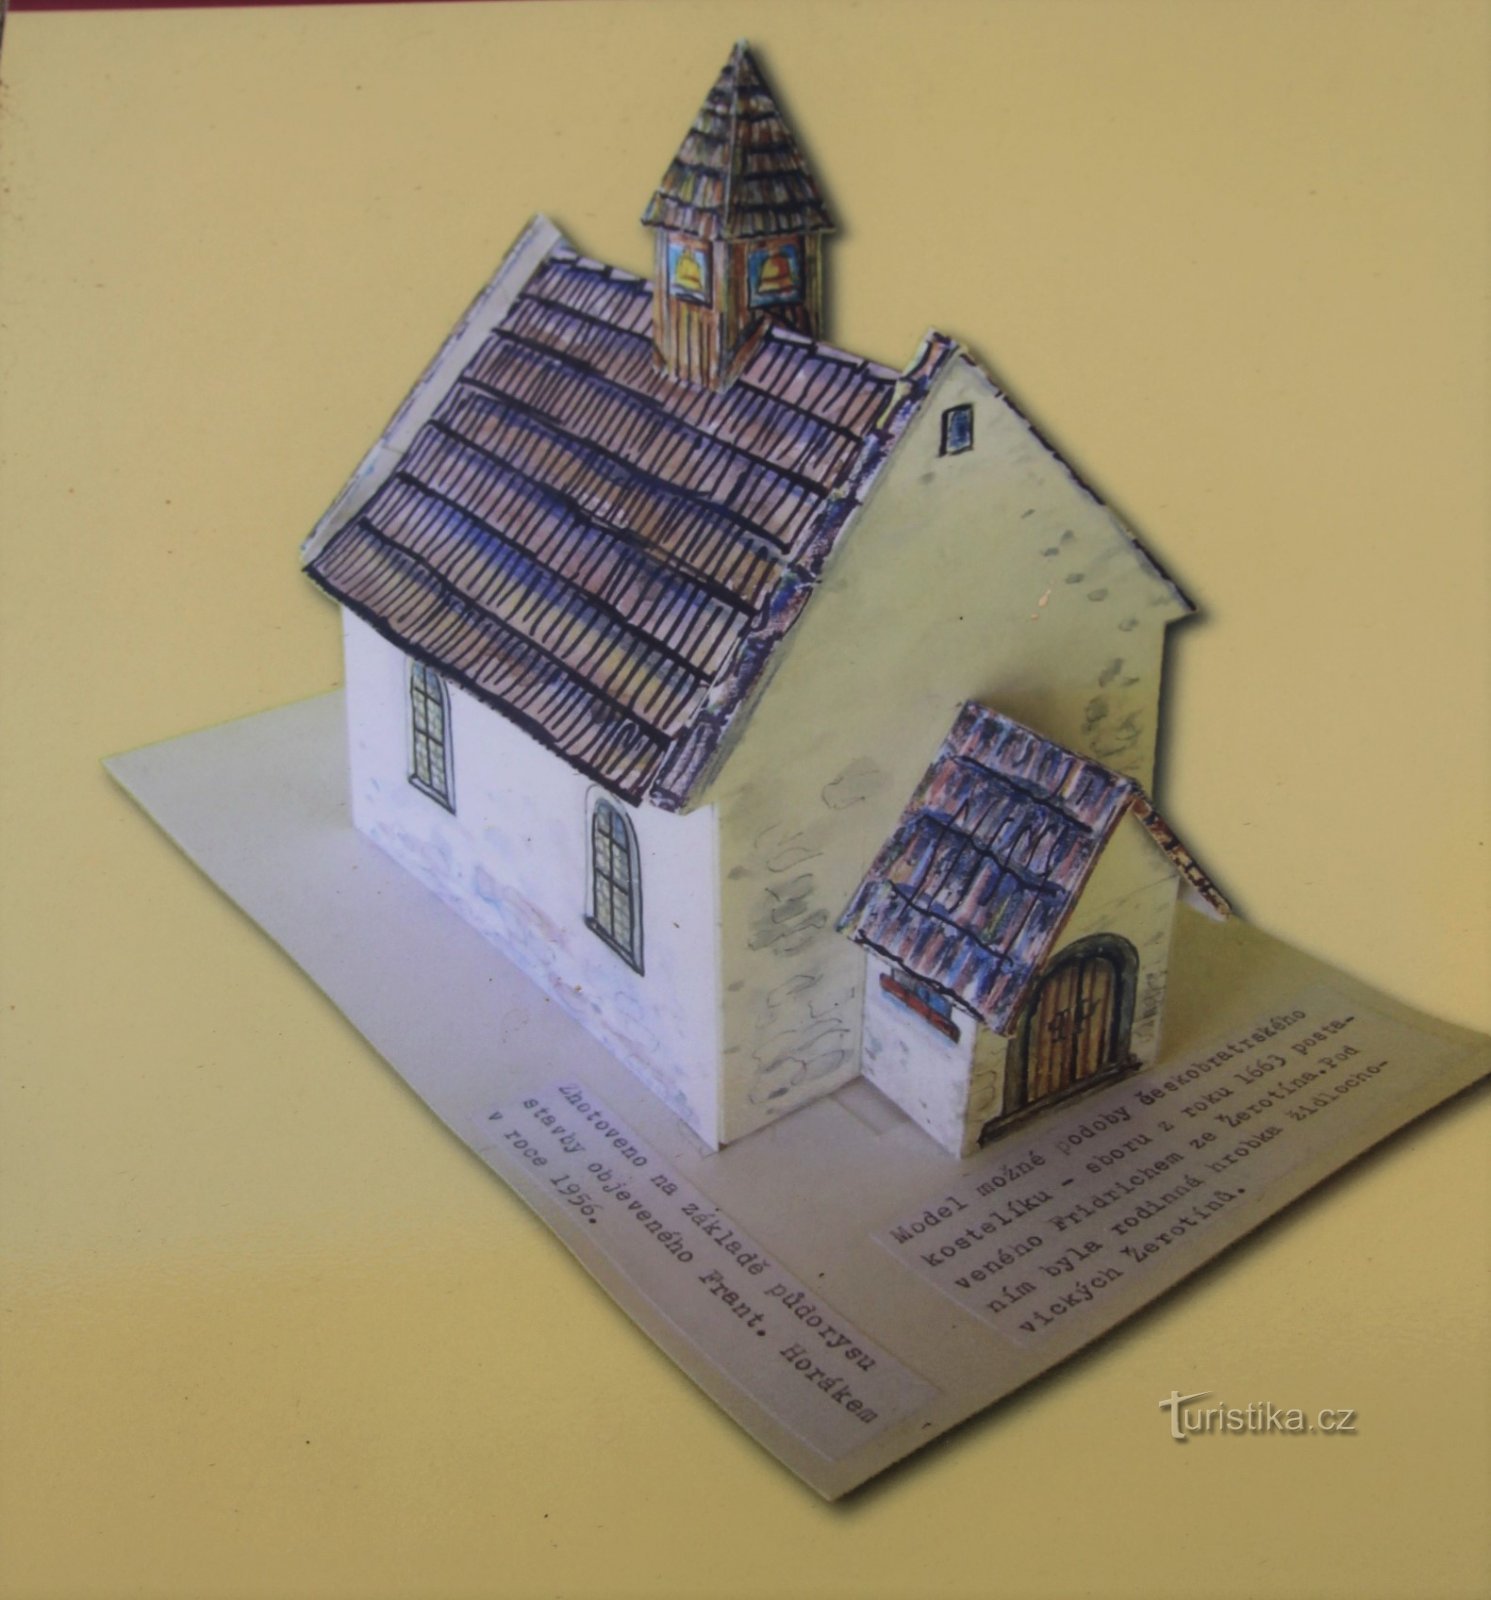 Modelo da possível forma da igreja dos Irmãos Tchecos (retirado do quadro de informações)